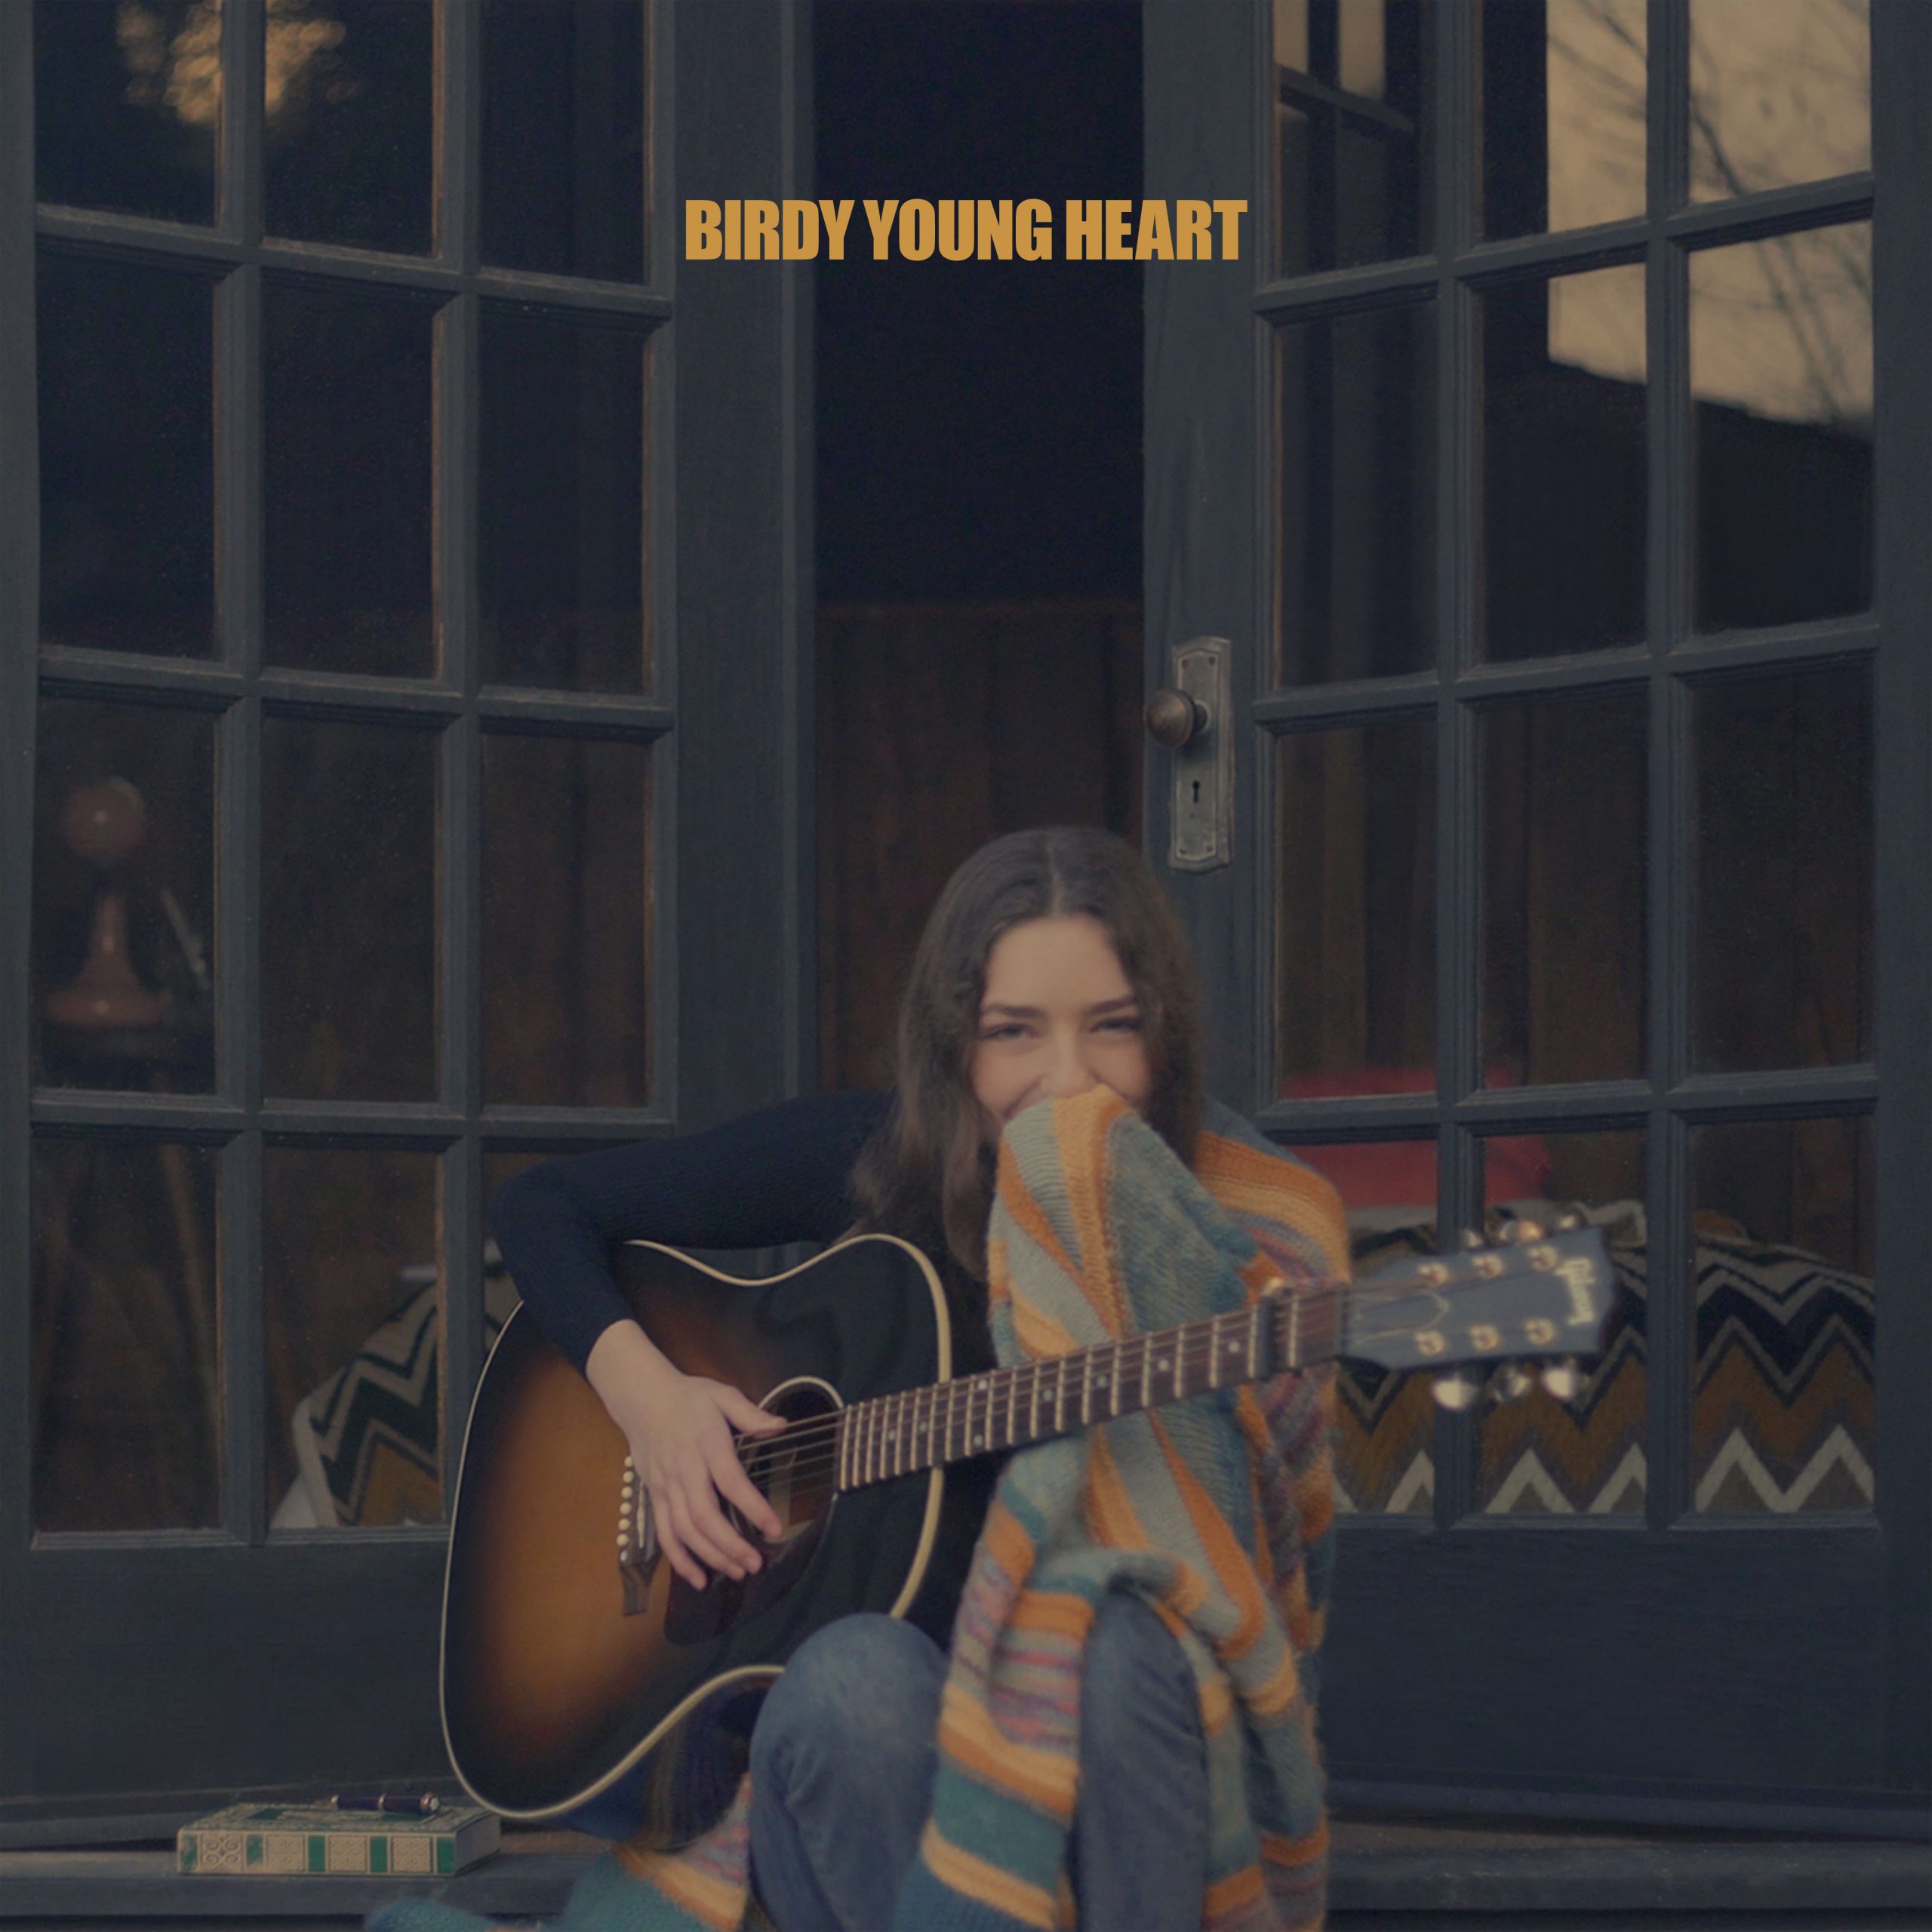 Capa do CD Young Heart, de Birdy. Nela vemos a cantora, uma jovem branca de cabelos castanhos, sentada na frente de uma porta de vidro entreaberta. Ela segura um violão e um tecido. 